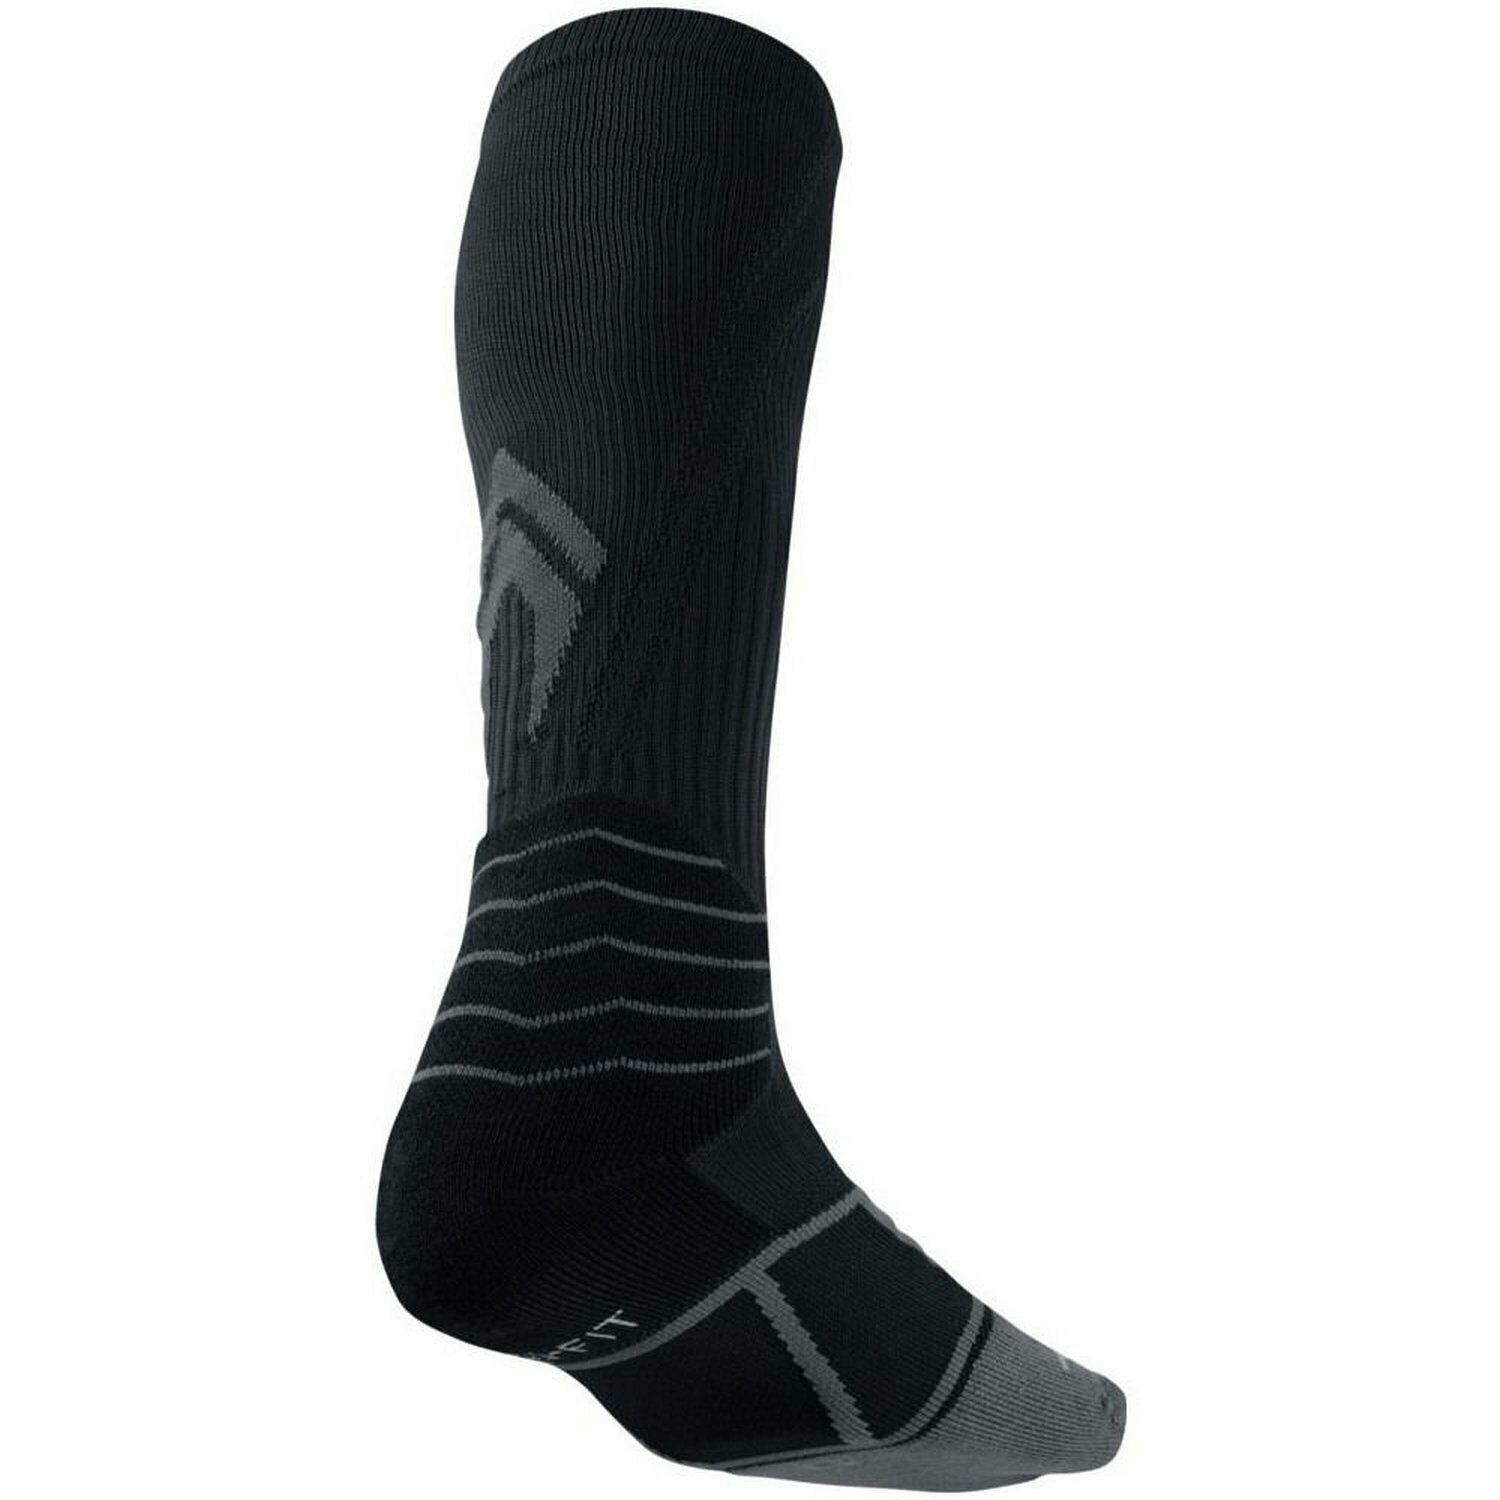 Nike Women's Elite Vapor OTC Baseball Socks Black Flint Grey Small #197G - $14.50